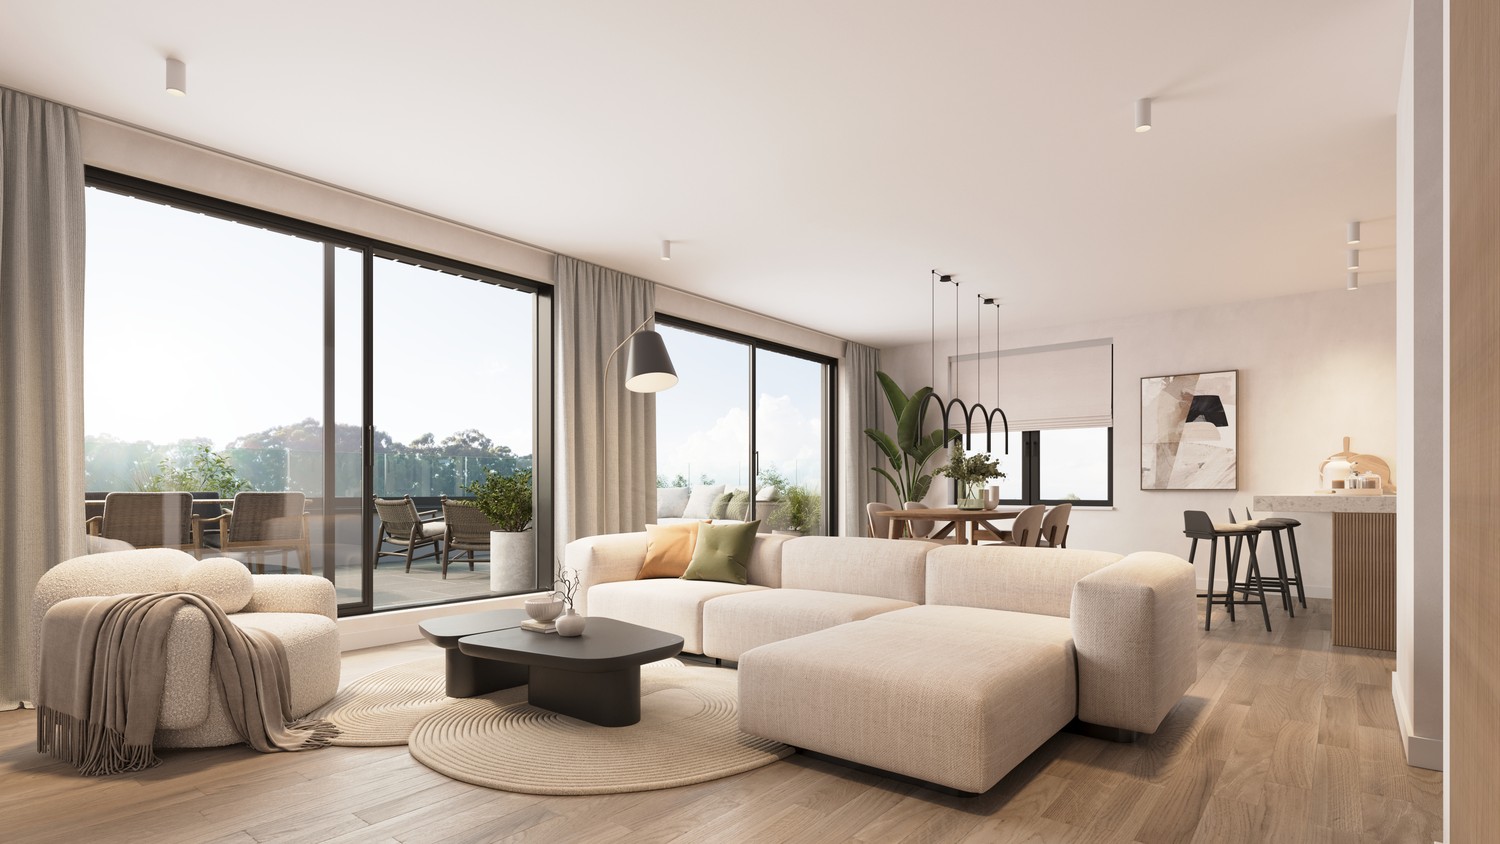 Residentie 'De Oester' : duurzaam, comfortabel, uitzonderlijk energiezuinig penthouse te Hechtel foto 10